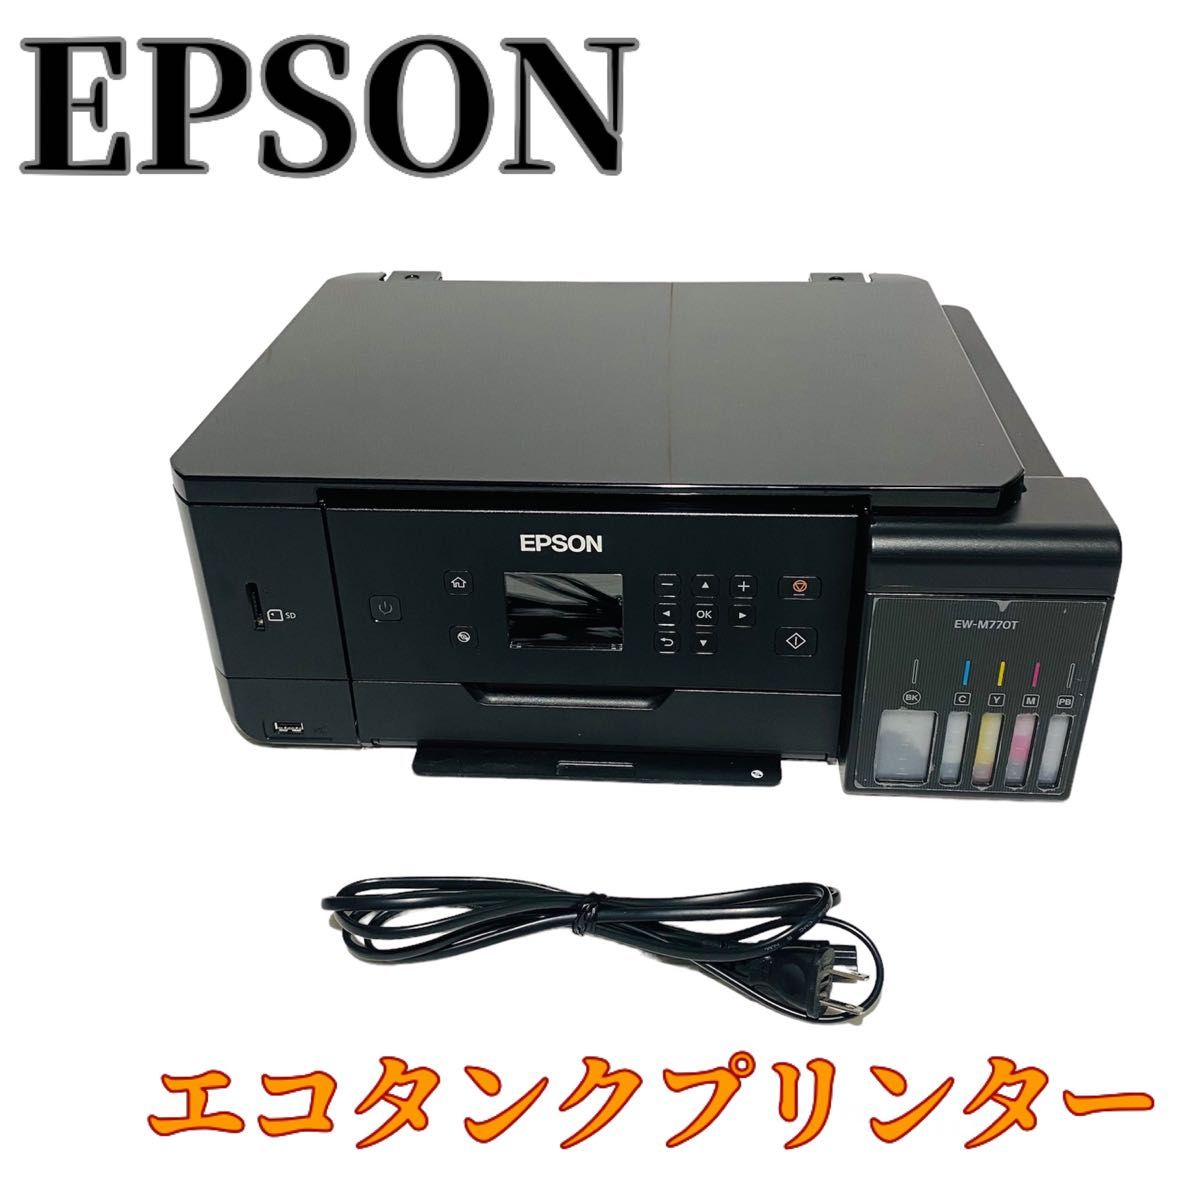 EPSON エプソン EW-M770T エコタンク搭載モデル 印刷枚数3873枚-